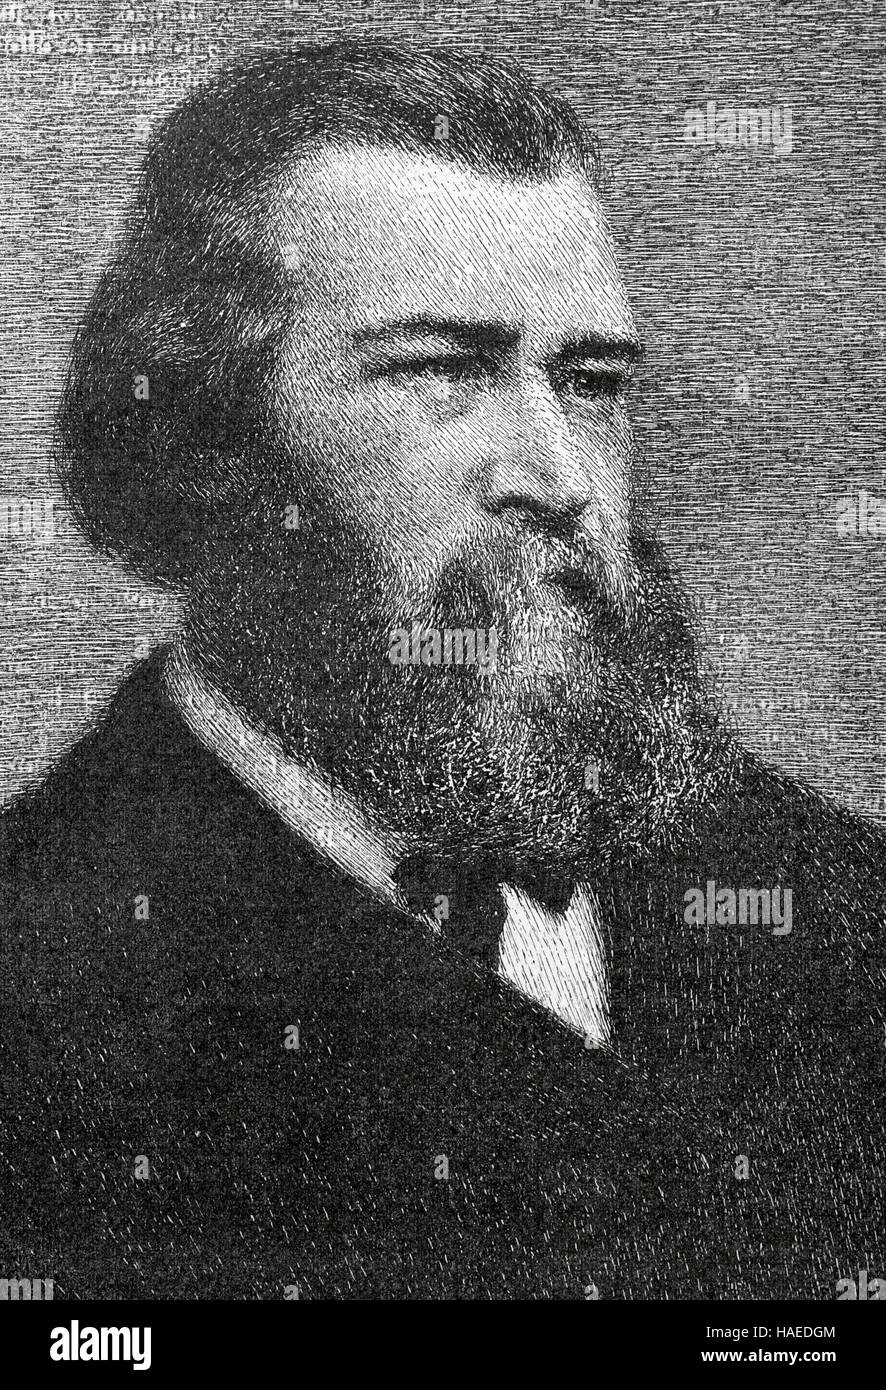 Jean-François Millet (1814-1875). Pittore Francese. Uno dei fondatori della scuola di Barbizon. Ritratto. Incisione. El Mundo Ilustrado, 1880. Foto Stock